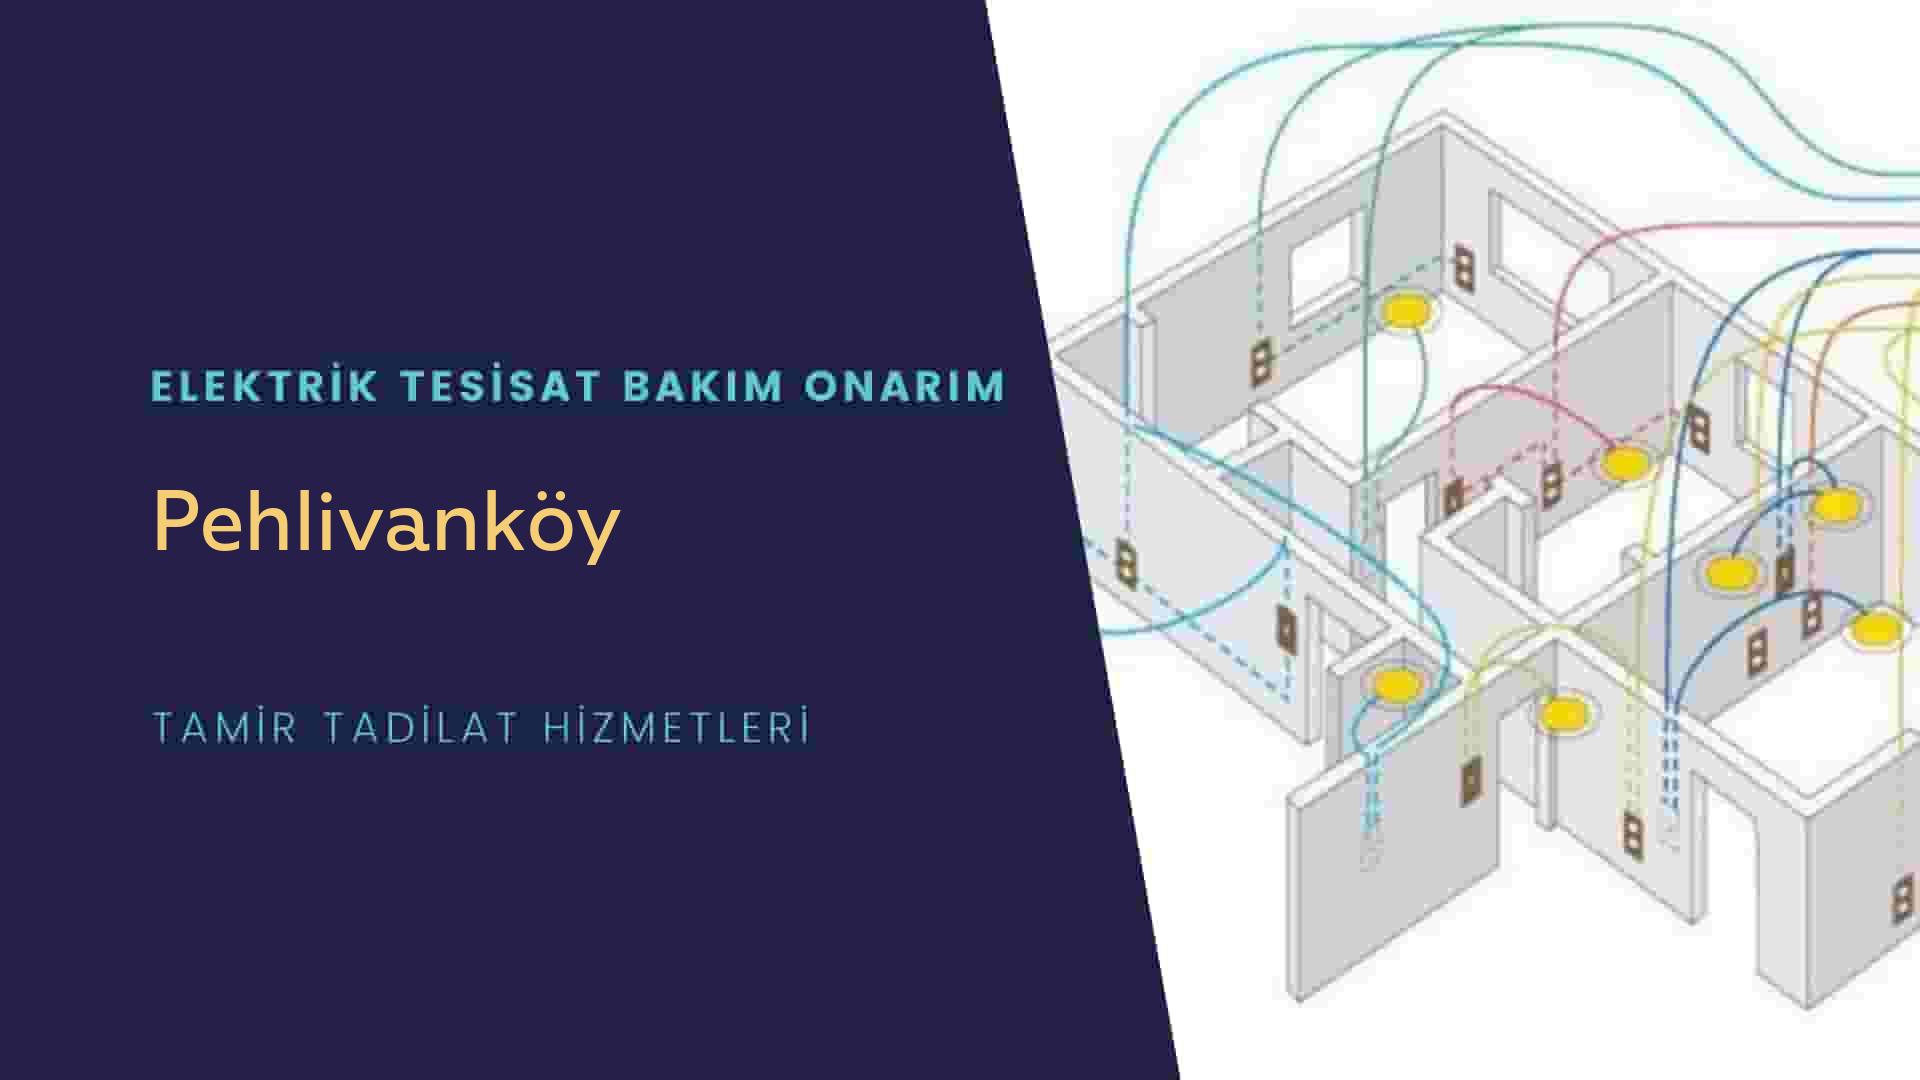 Pehlivanköy'de elektrik tesisatı ustalarımı arıyorsunuz doğru adrestenizi Pehlivanköy elektrik tesisatı ustalarımız 7/24 sizlere hizmet vermekten mutluluk duyar.